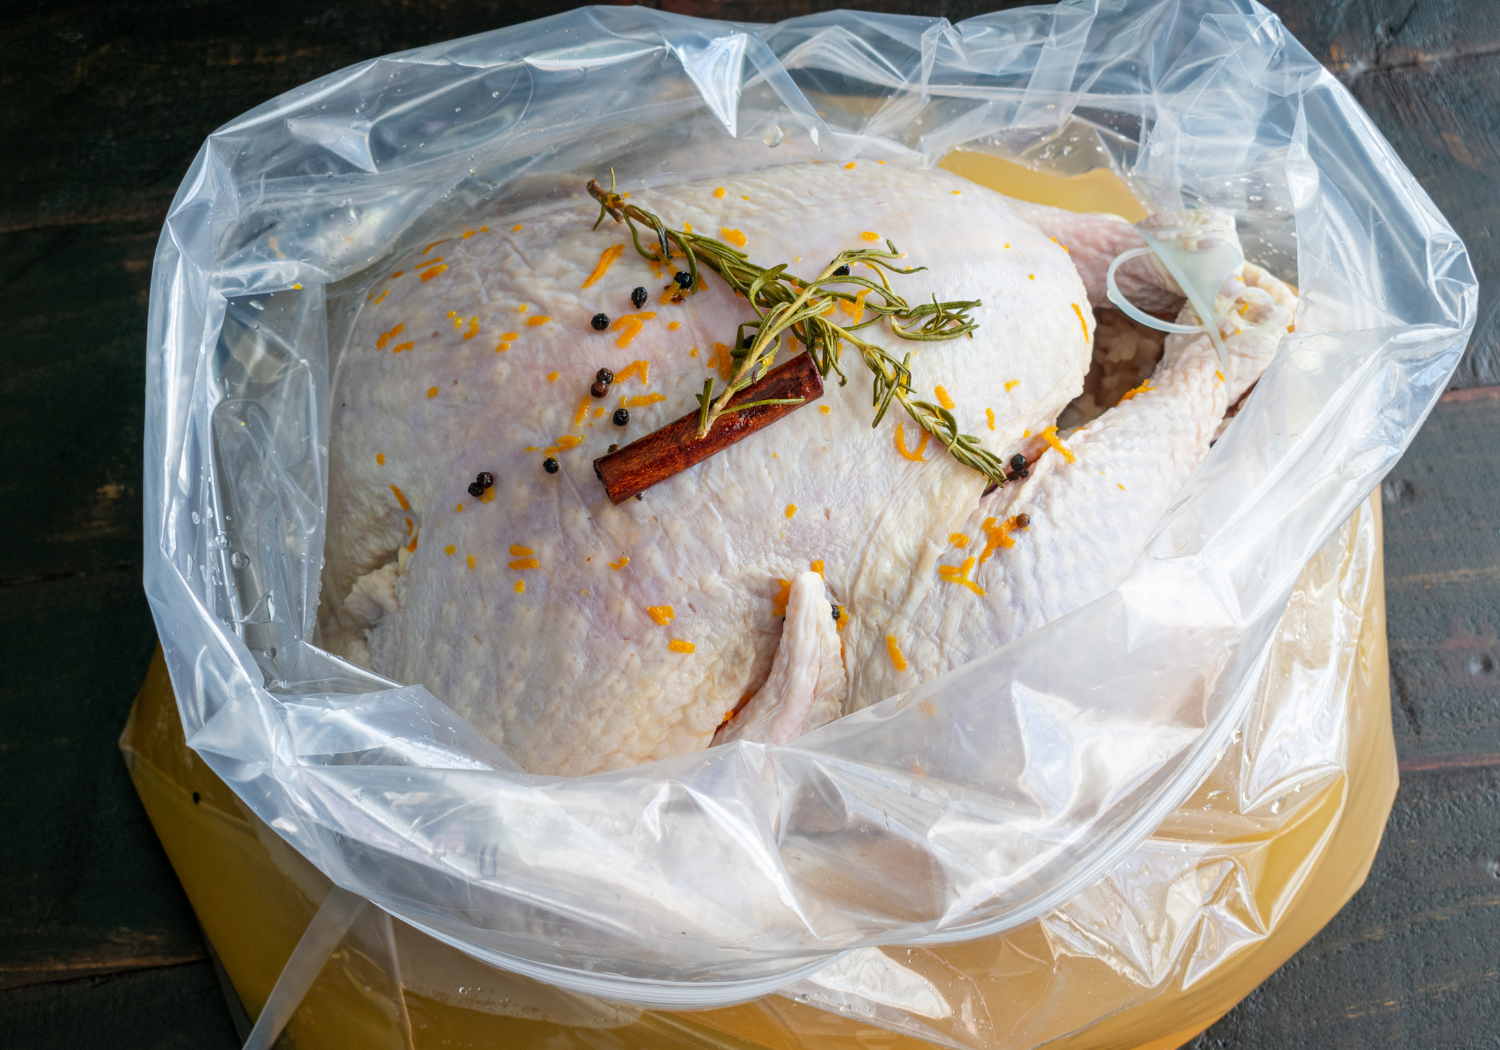 Tea turkey brine recipe turkey in a bag brining. 